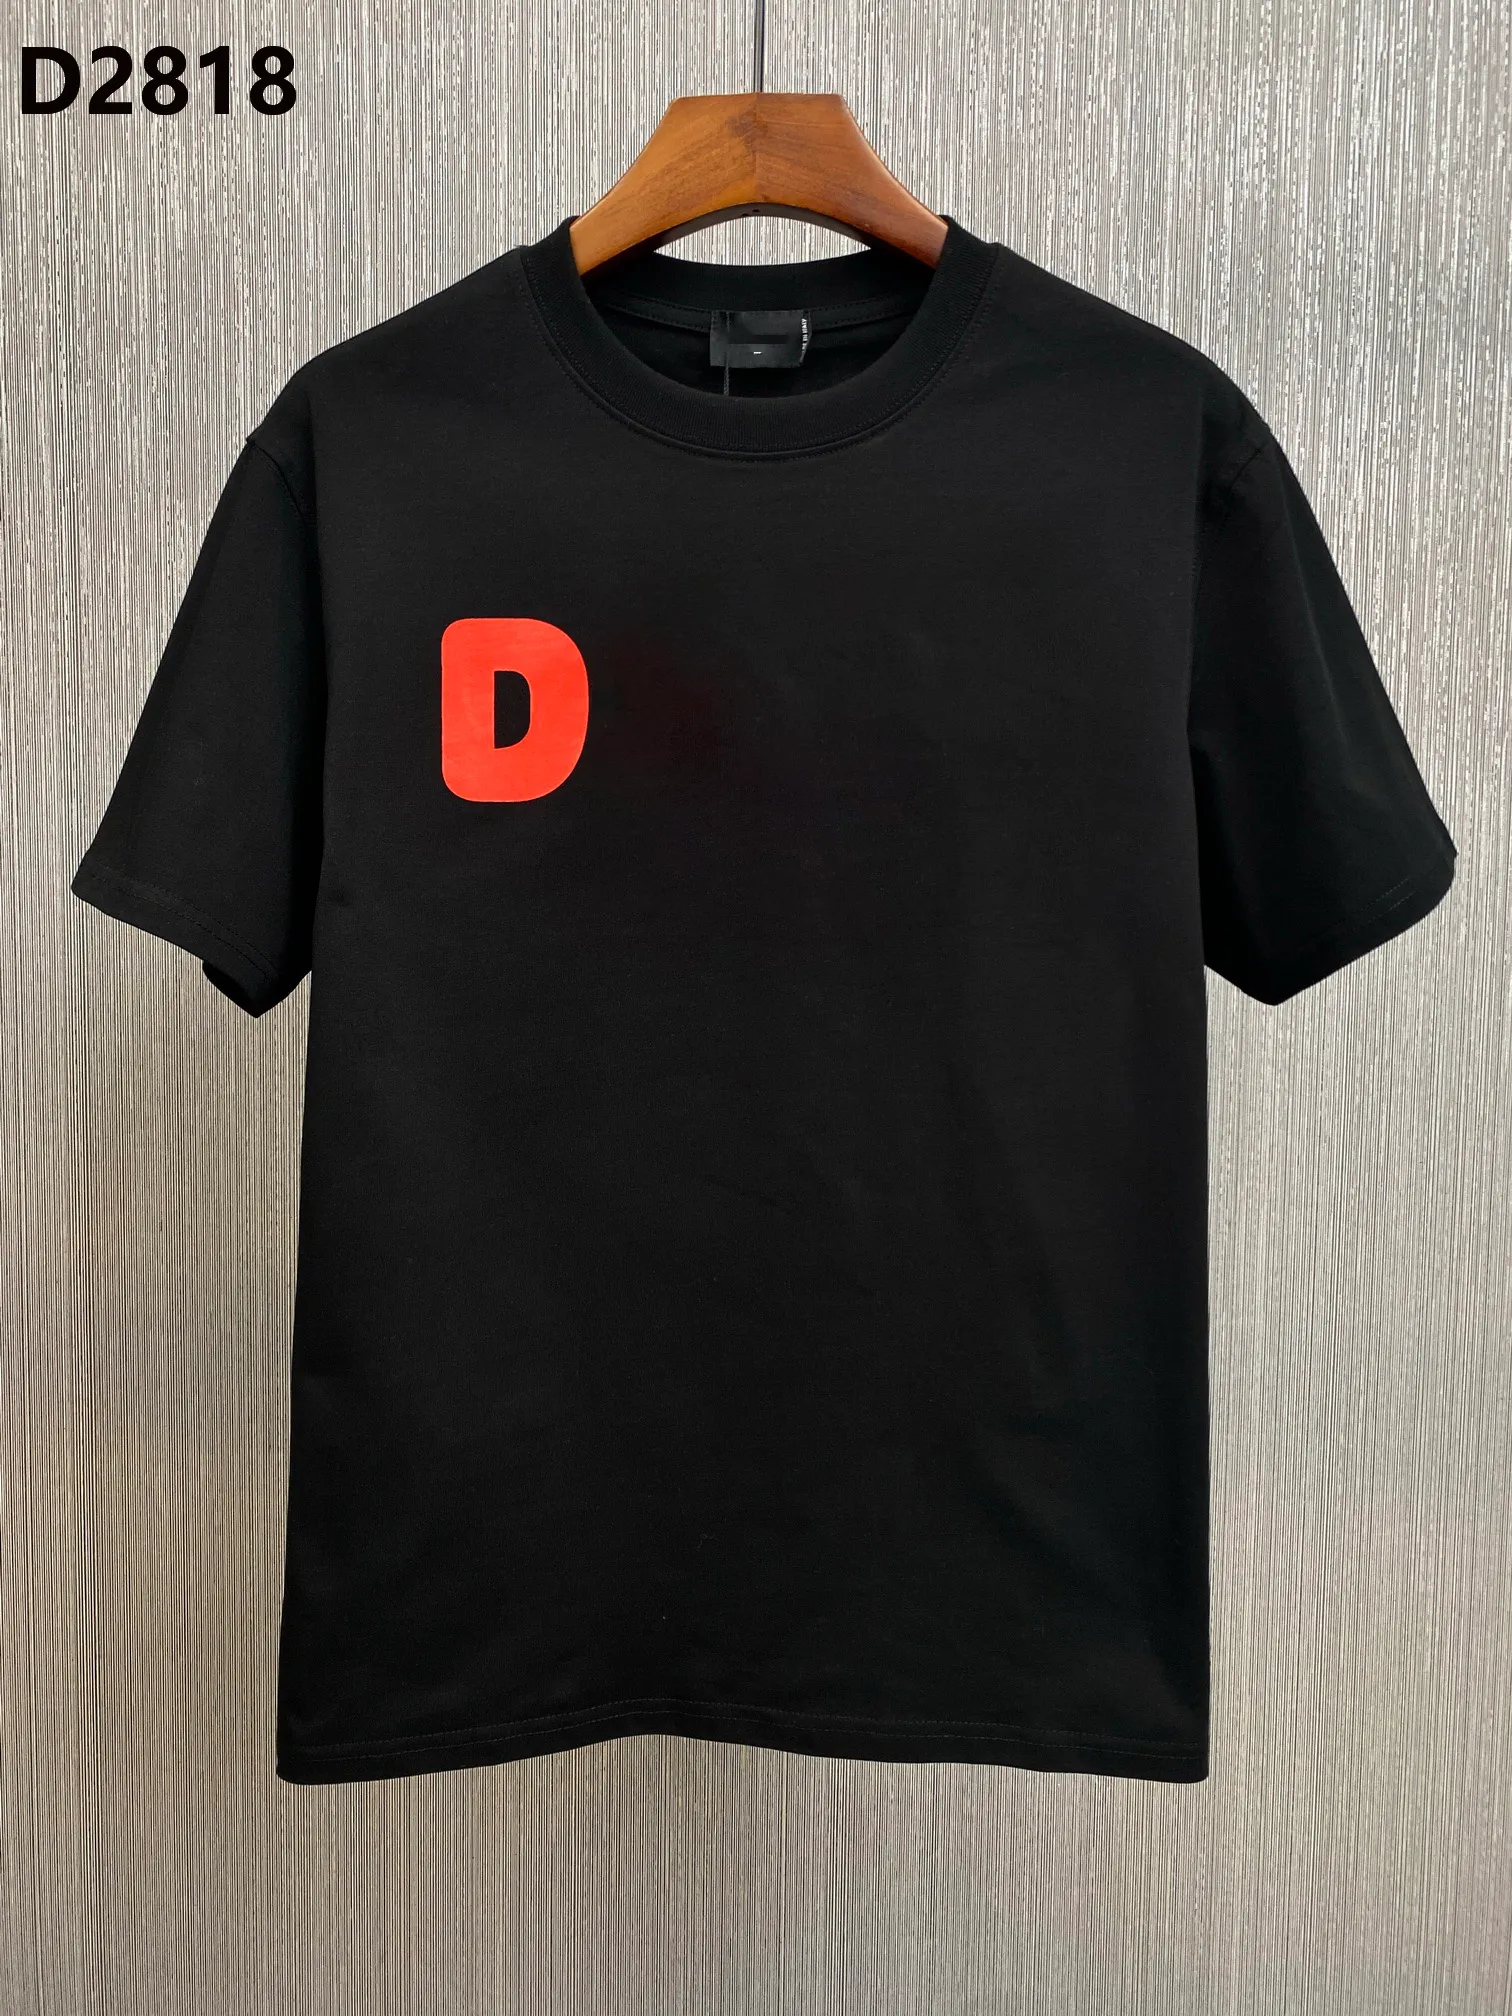 Италия Новая мужская дизайнерская футболка Paris Fashion Tshirts Summer D Футболка мужская высокая качество 100% хлопок M-XXXL 28180